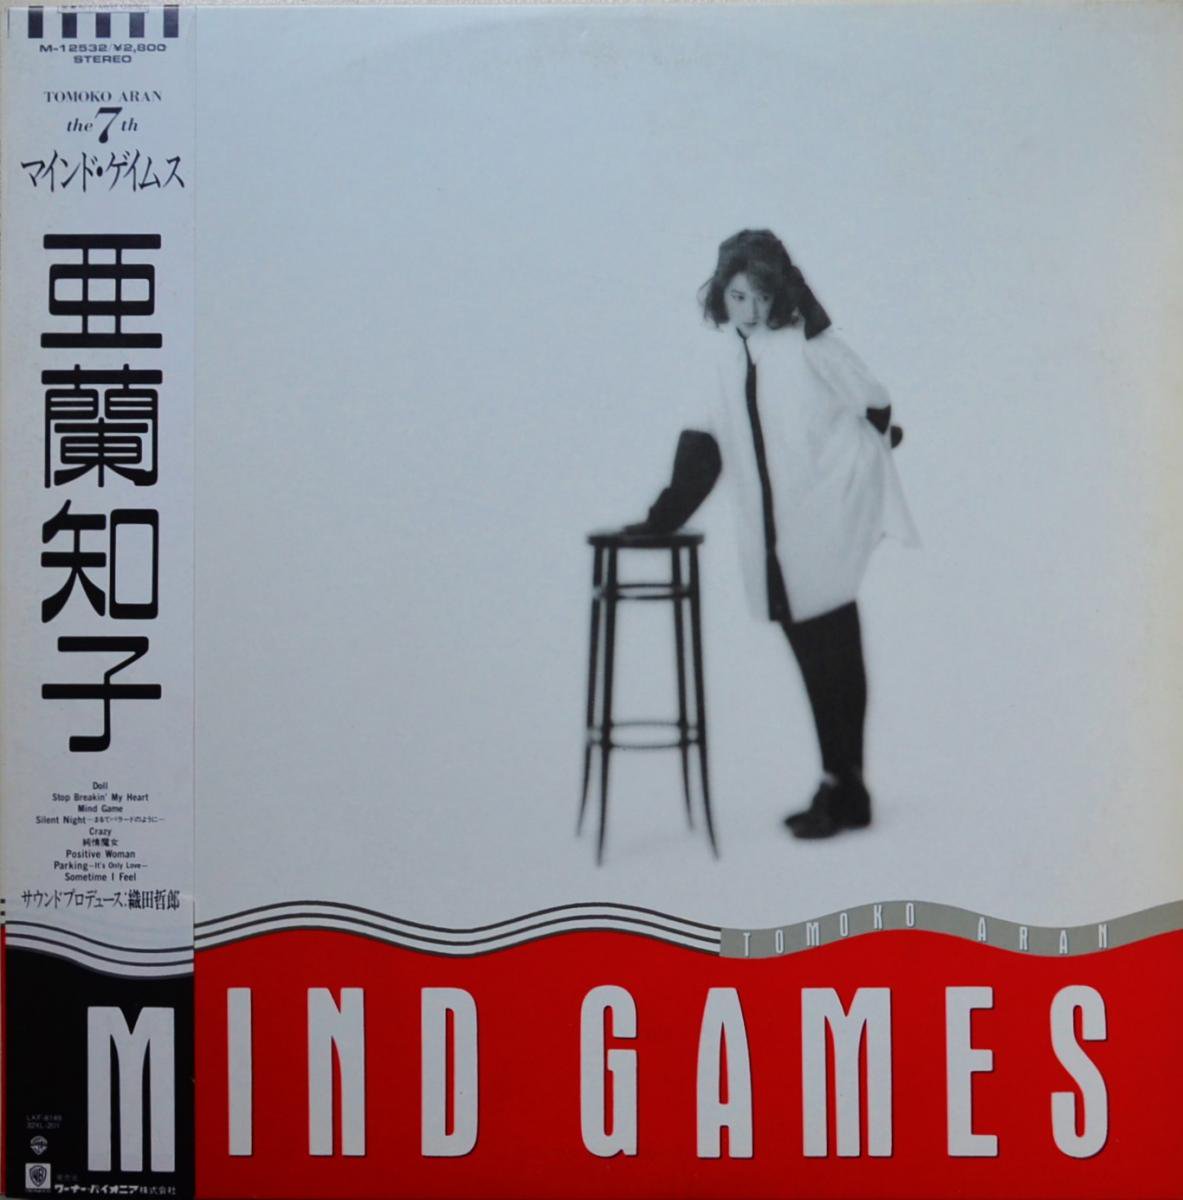 亜蘭知子 TOMOKO ARAN / マインド・ゲイムス MIND GAMES (LP)